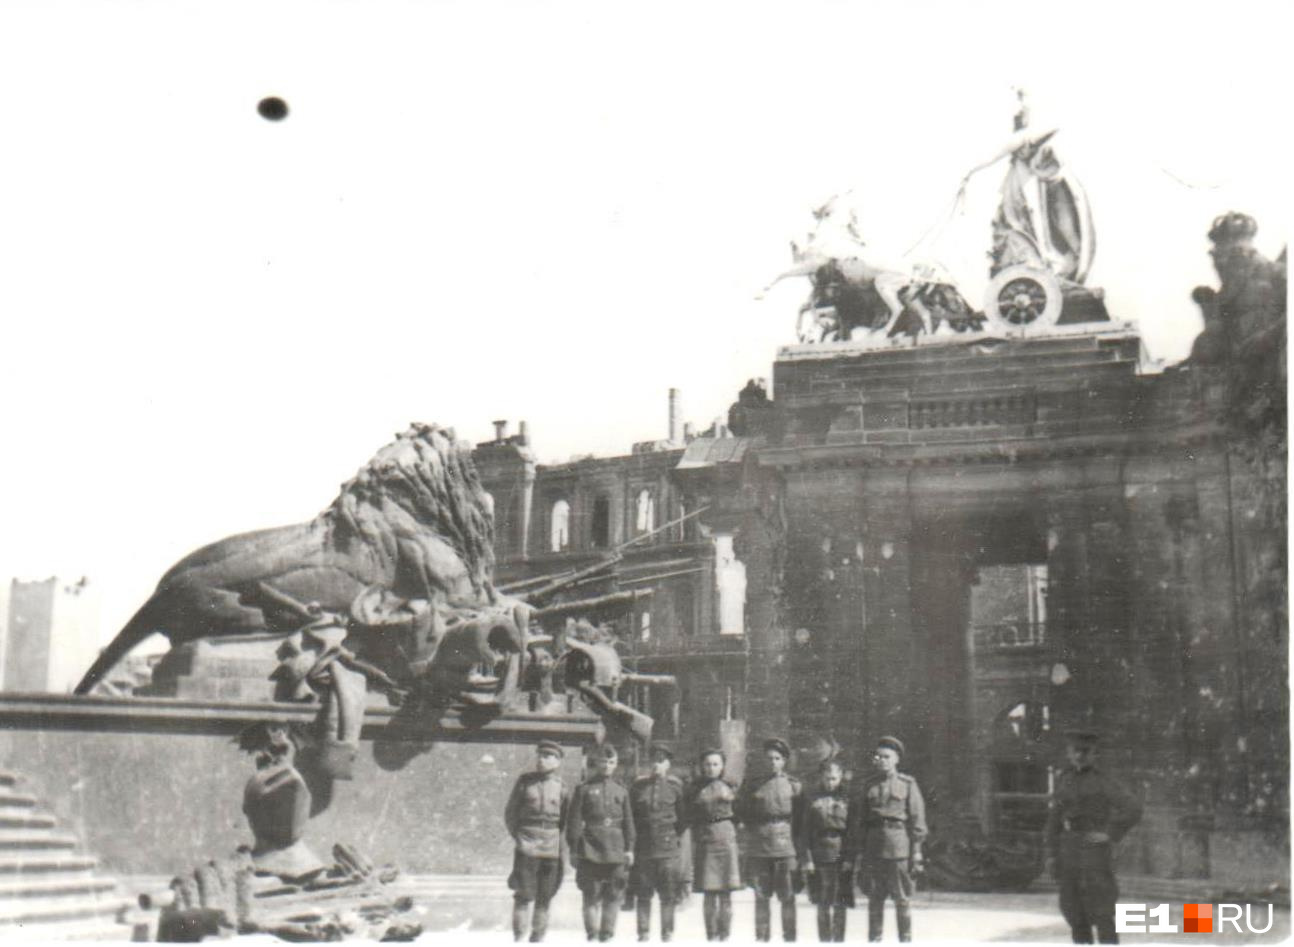 Лев — символ побед Германии — и советские солдаты<br>